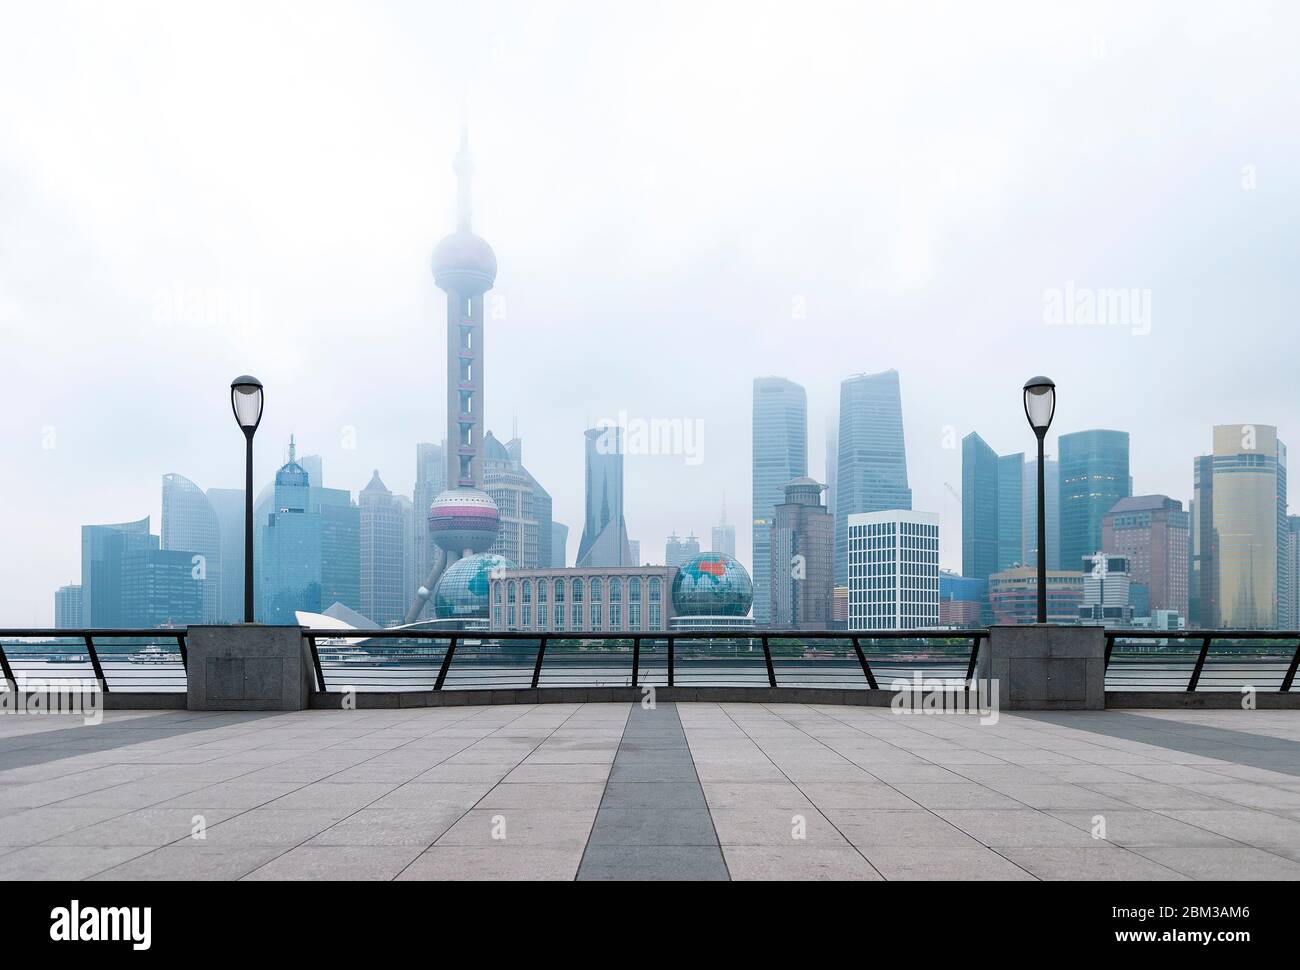 Die Skyline von Shanghai im Nebel von der Uferpromenade Bund entlang des Huangpu Flusses, China, aus gesehen. Stockfoto